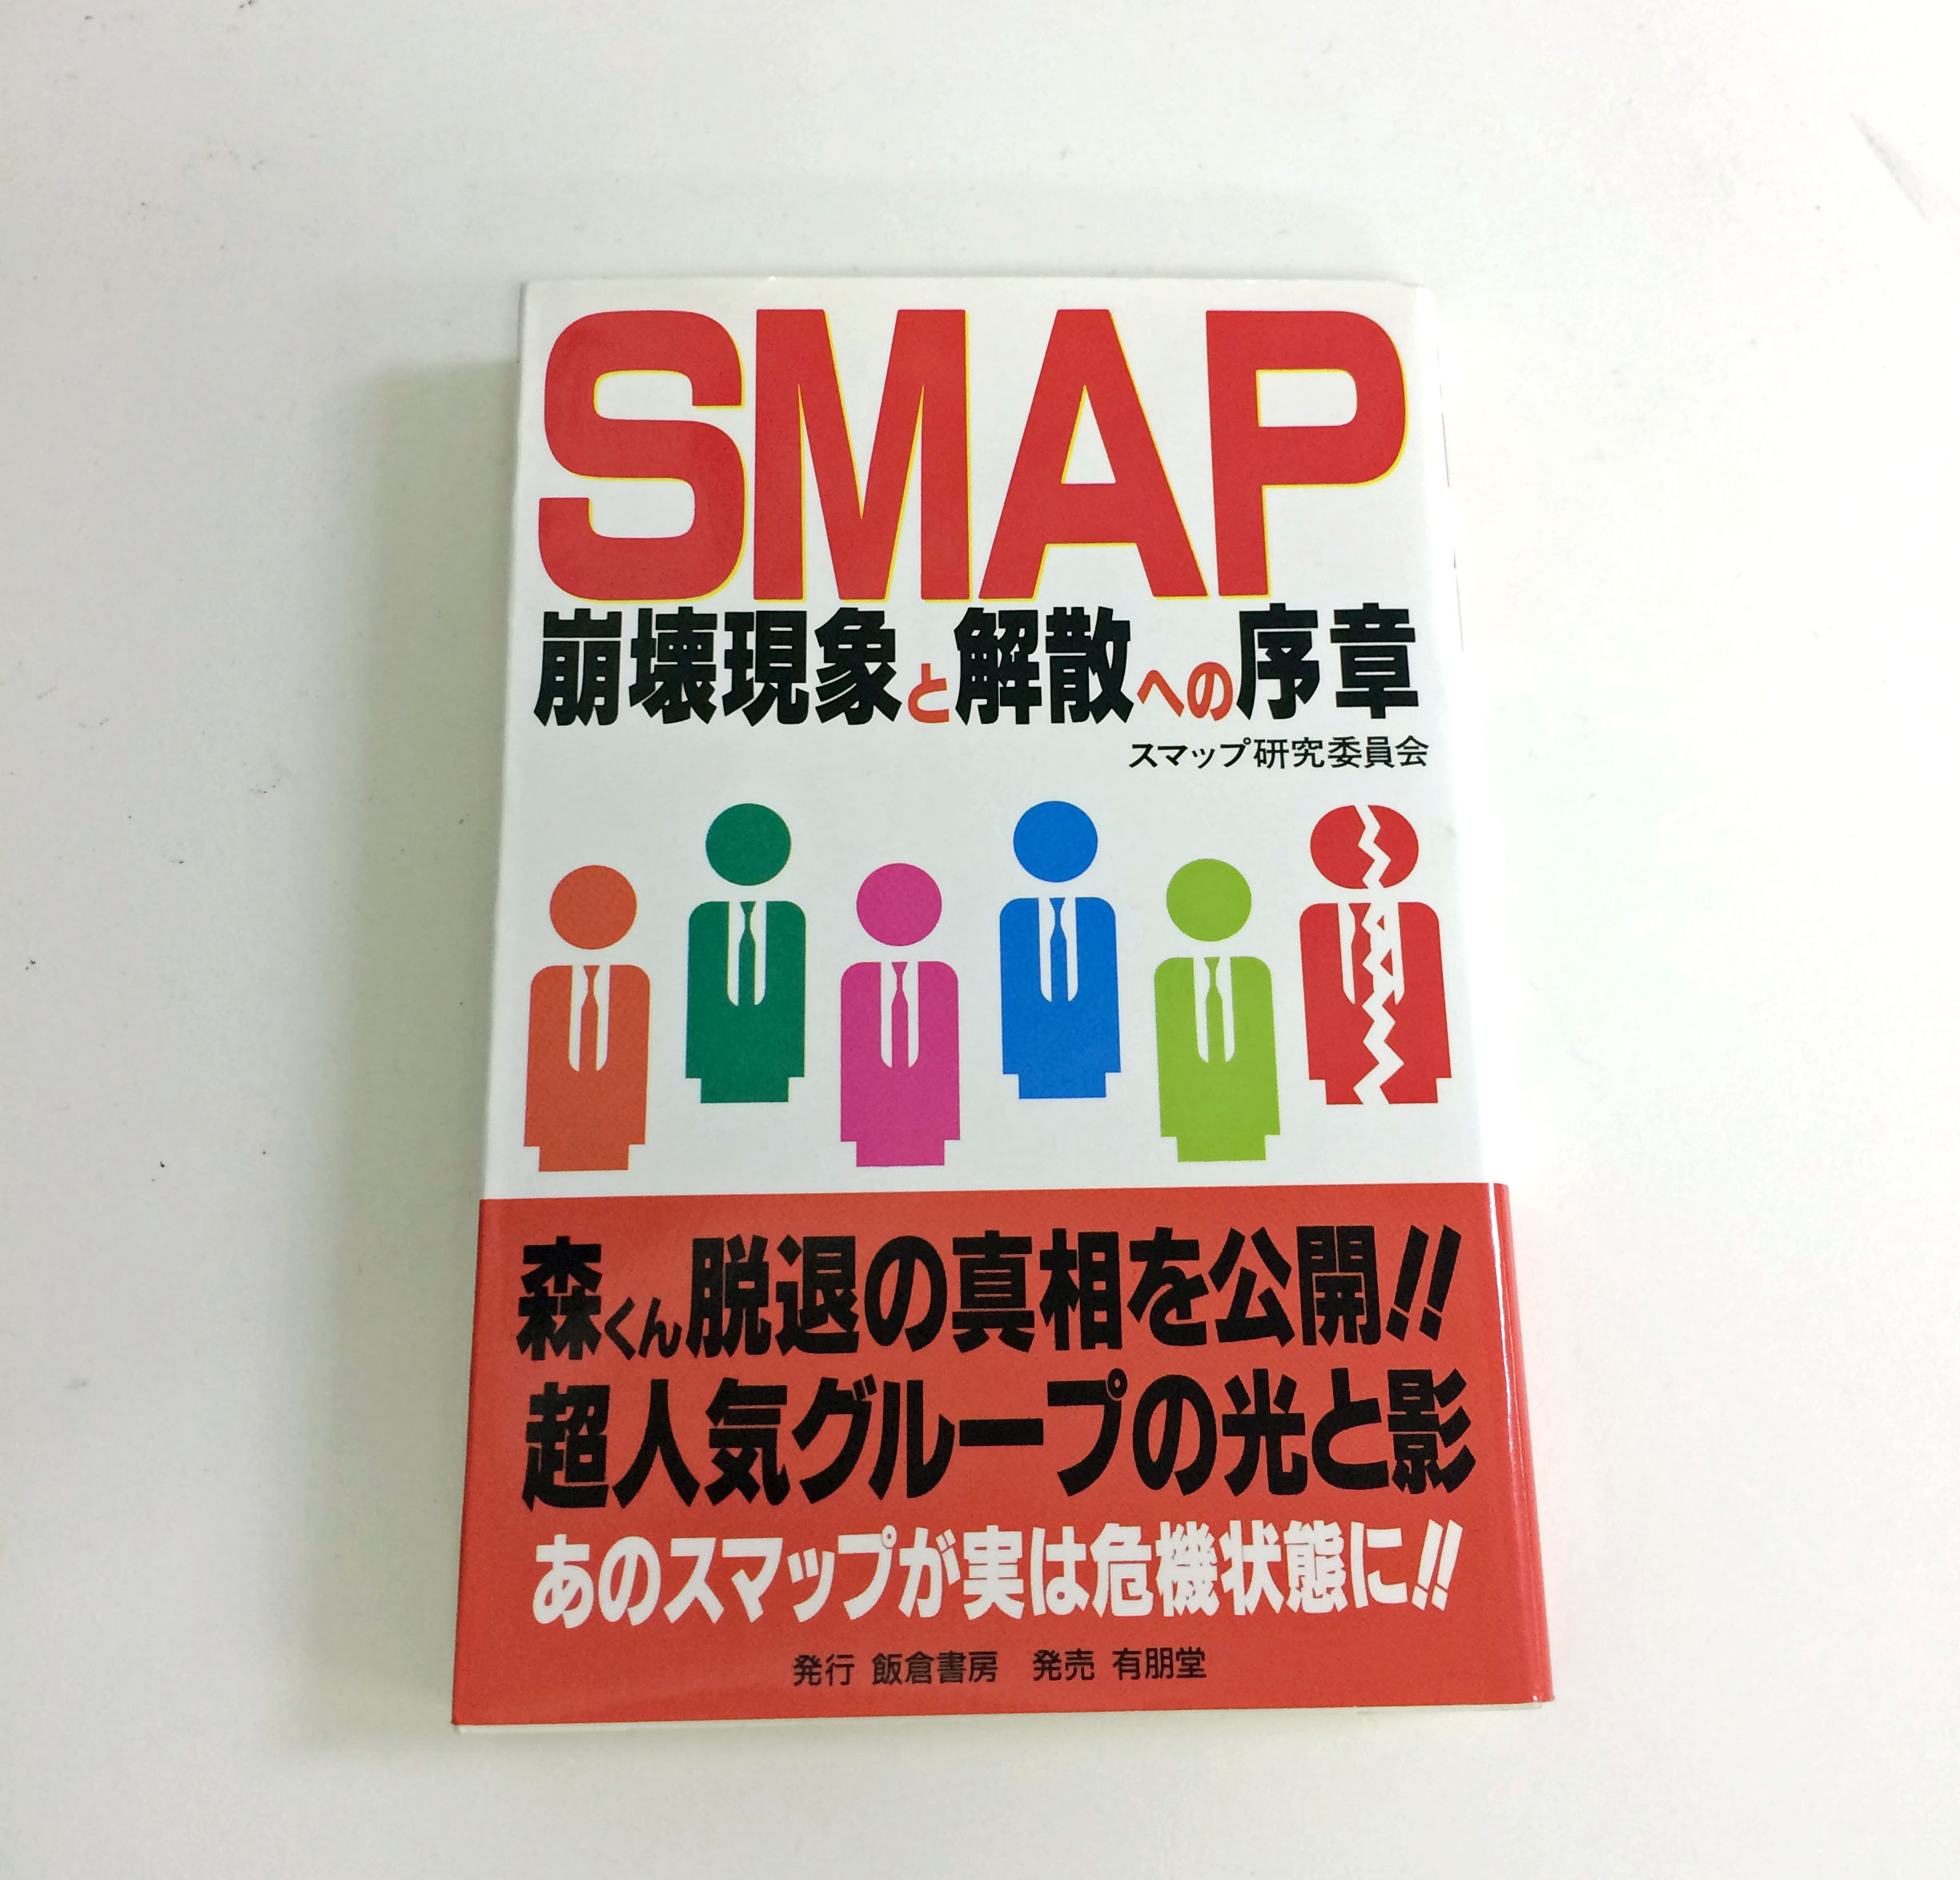 SMAPの解散は20年前から予言されていた!? 1996年発刊の書籍の驚くべき